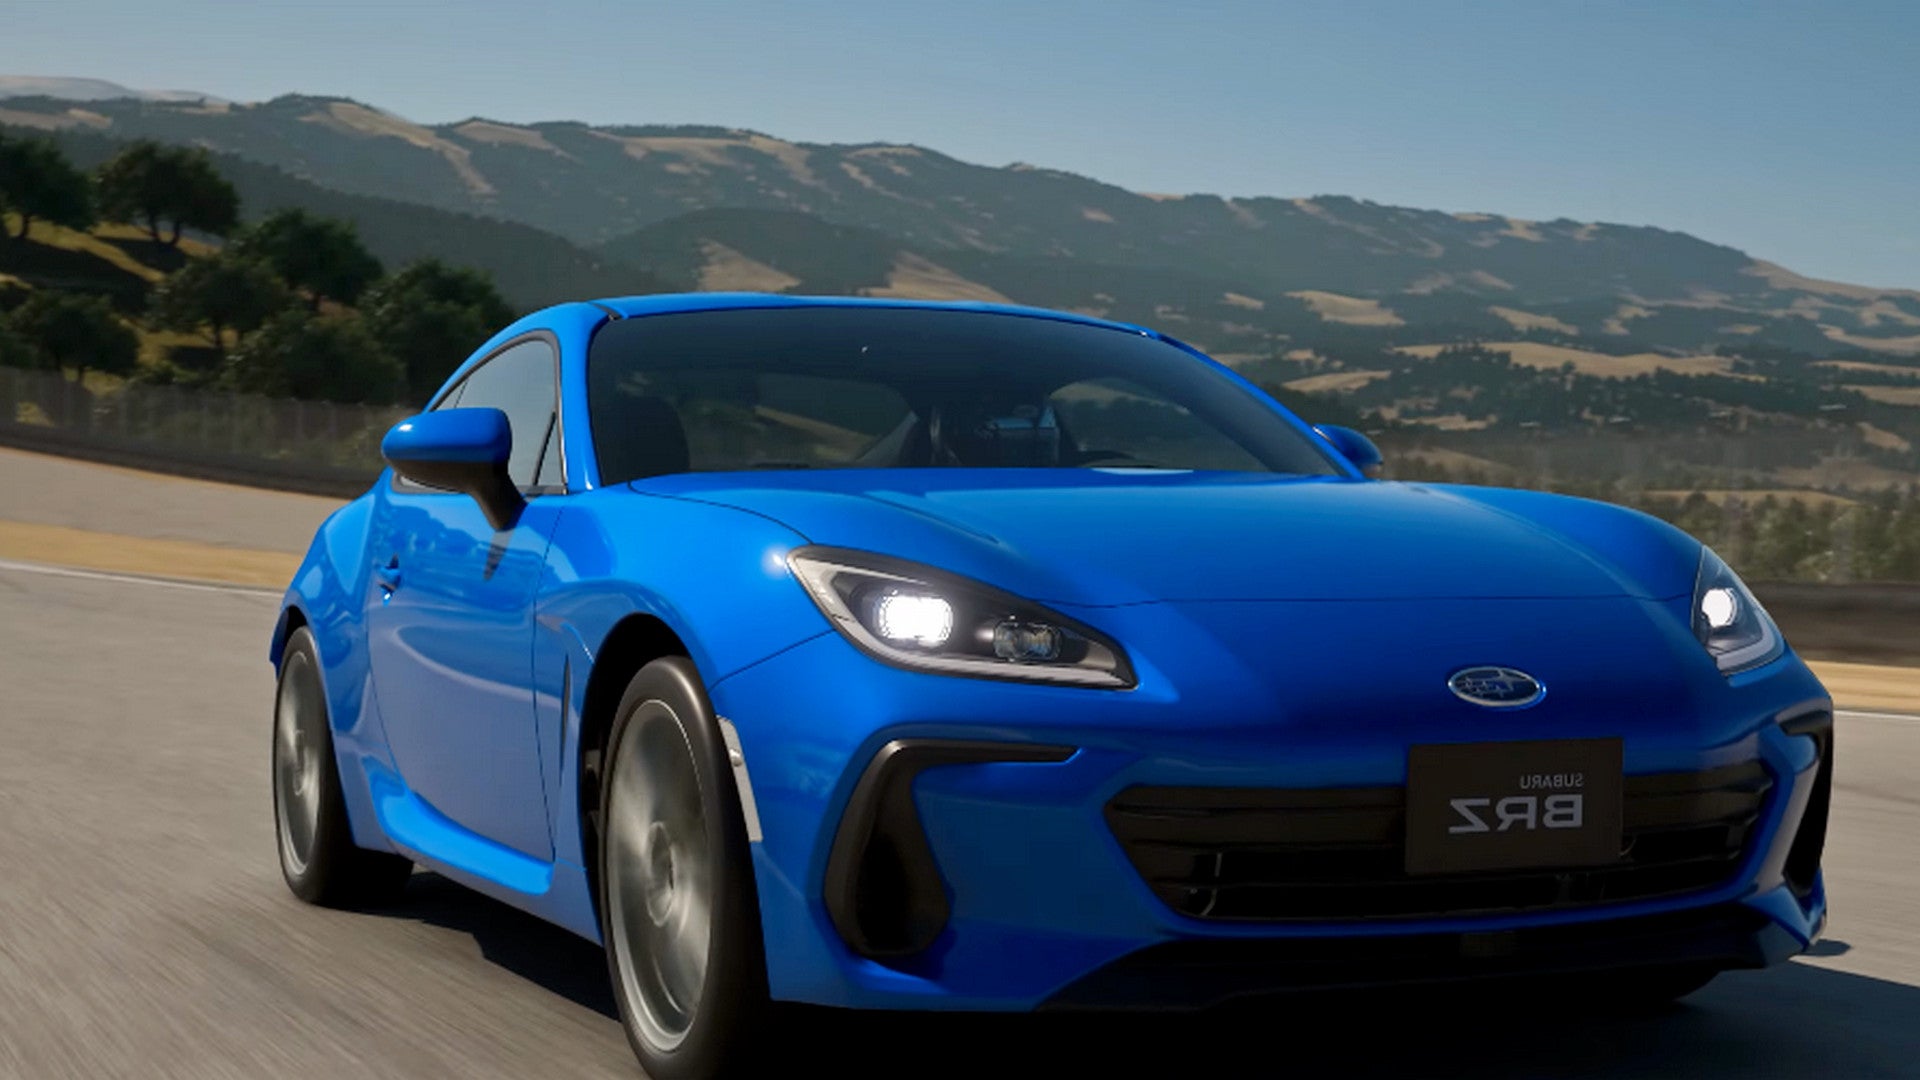 Bilder zu Gran Turismo 7: Neues Update bringt heute 3 Autos und das 24-Stunden-Layout von Spa